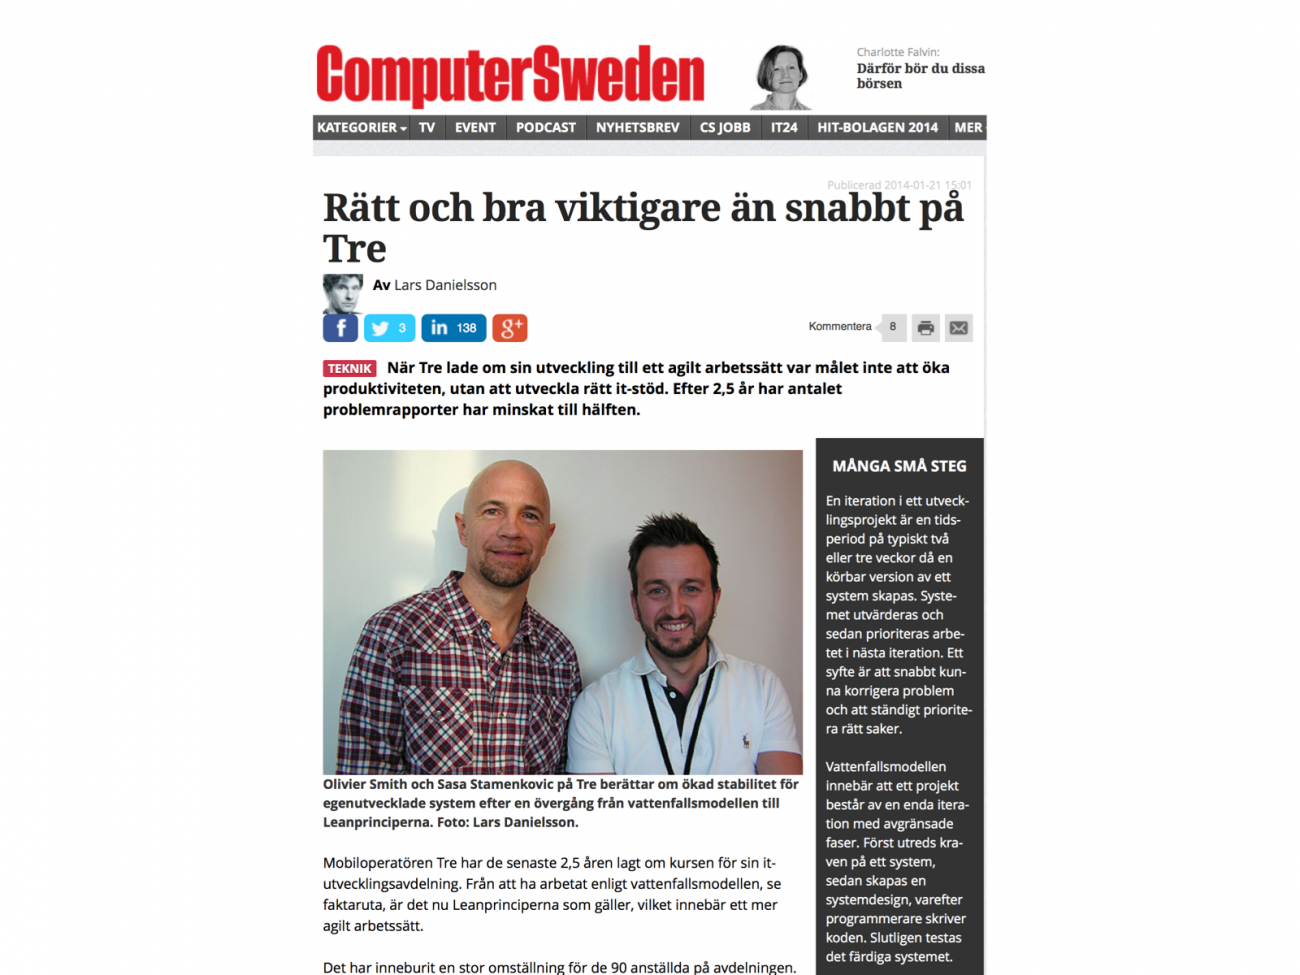 SASA @ COMPUTER SWEDEN